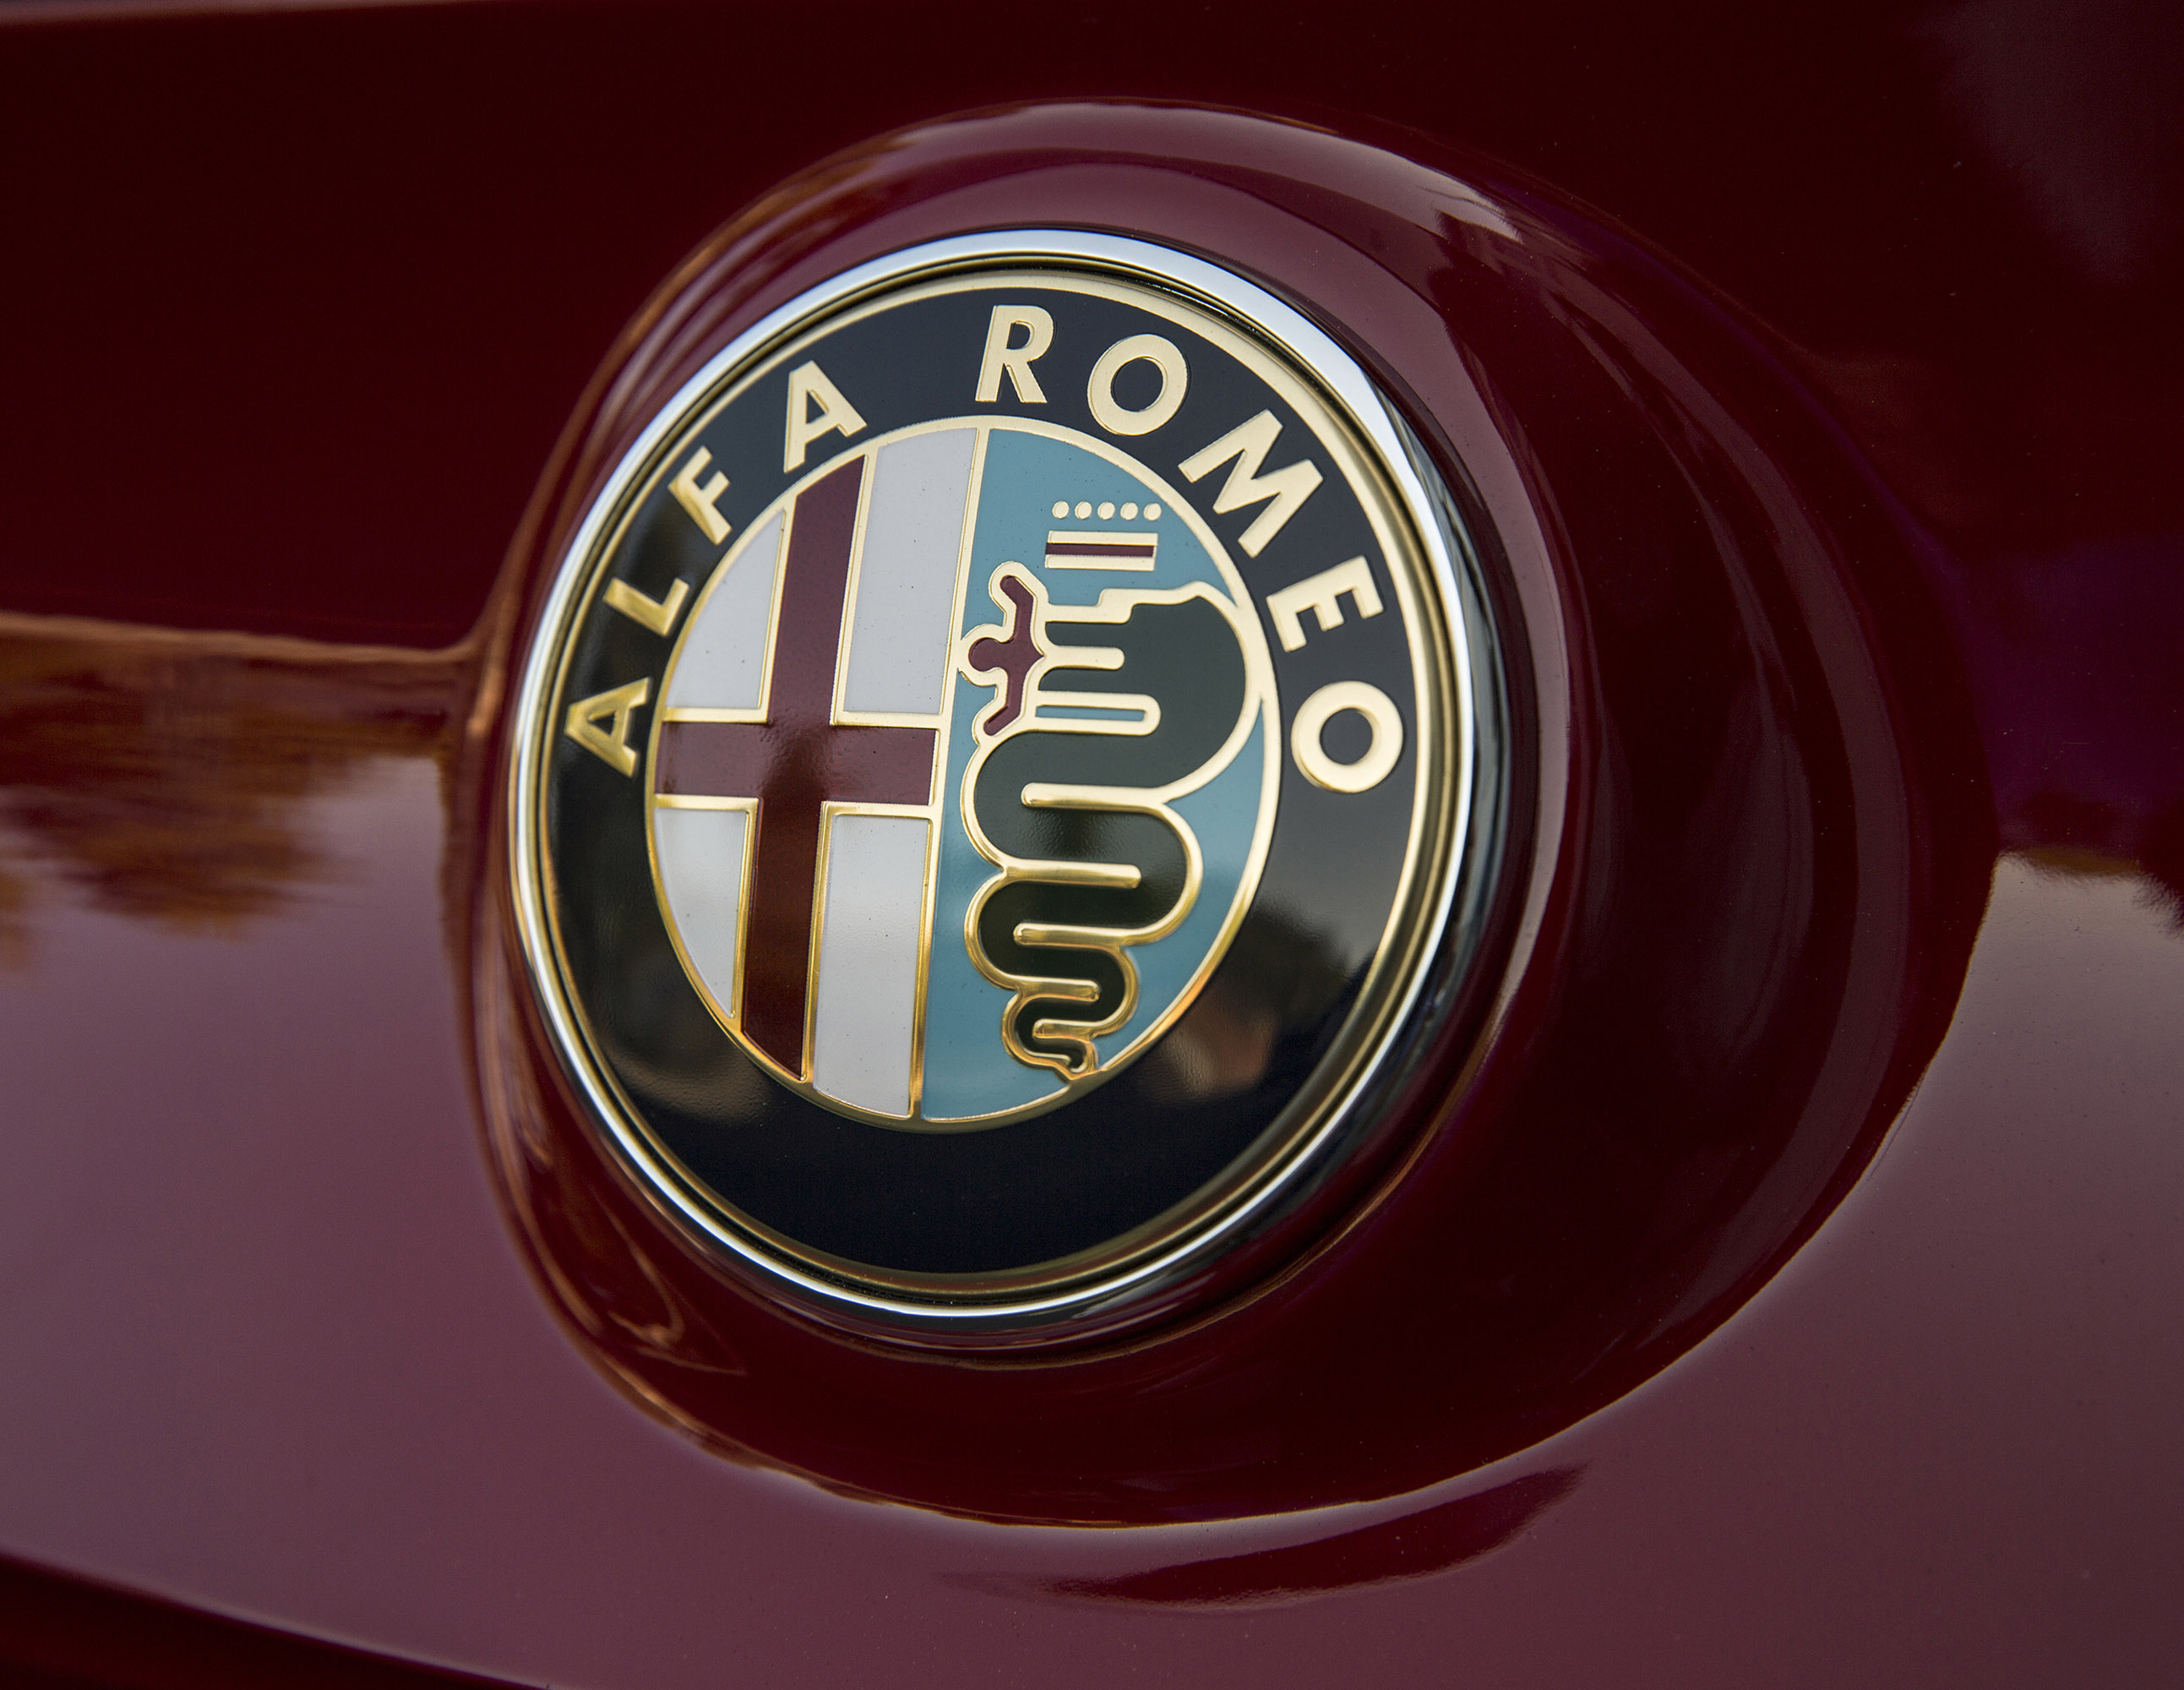 Alfa Romeo 4C US-Spec